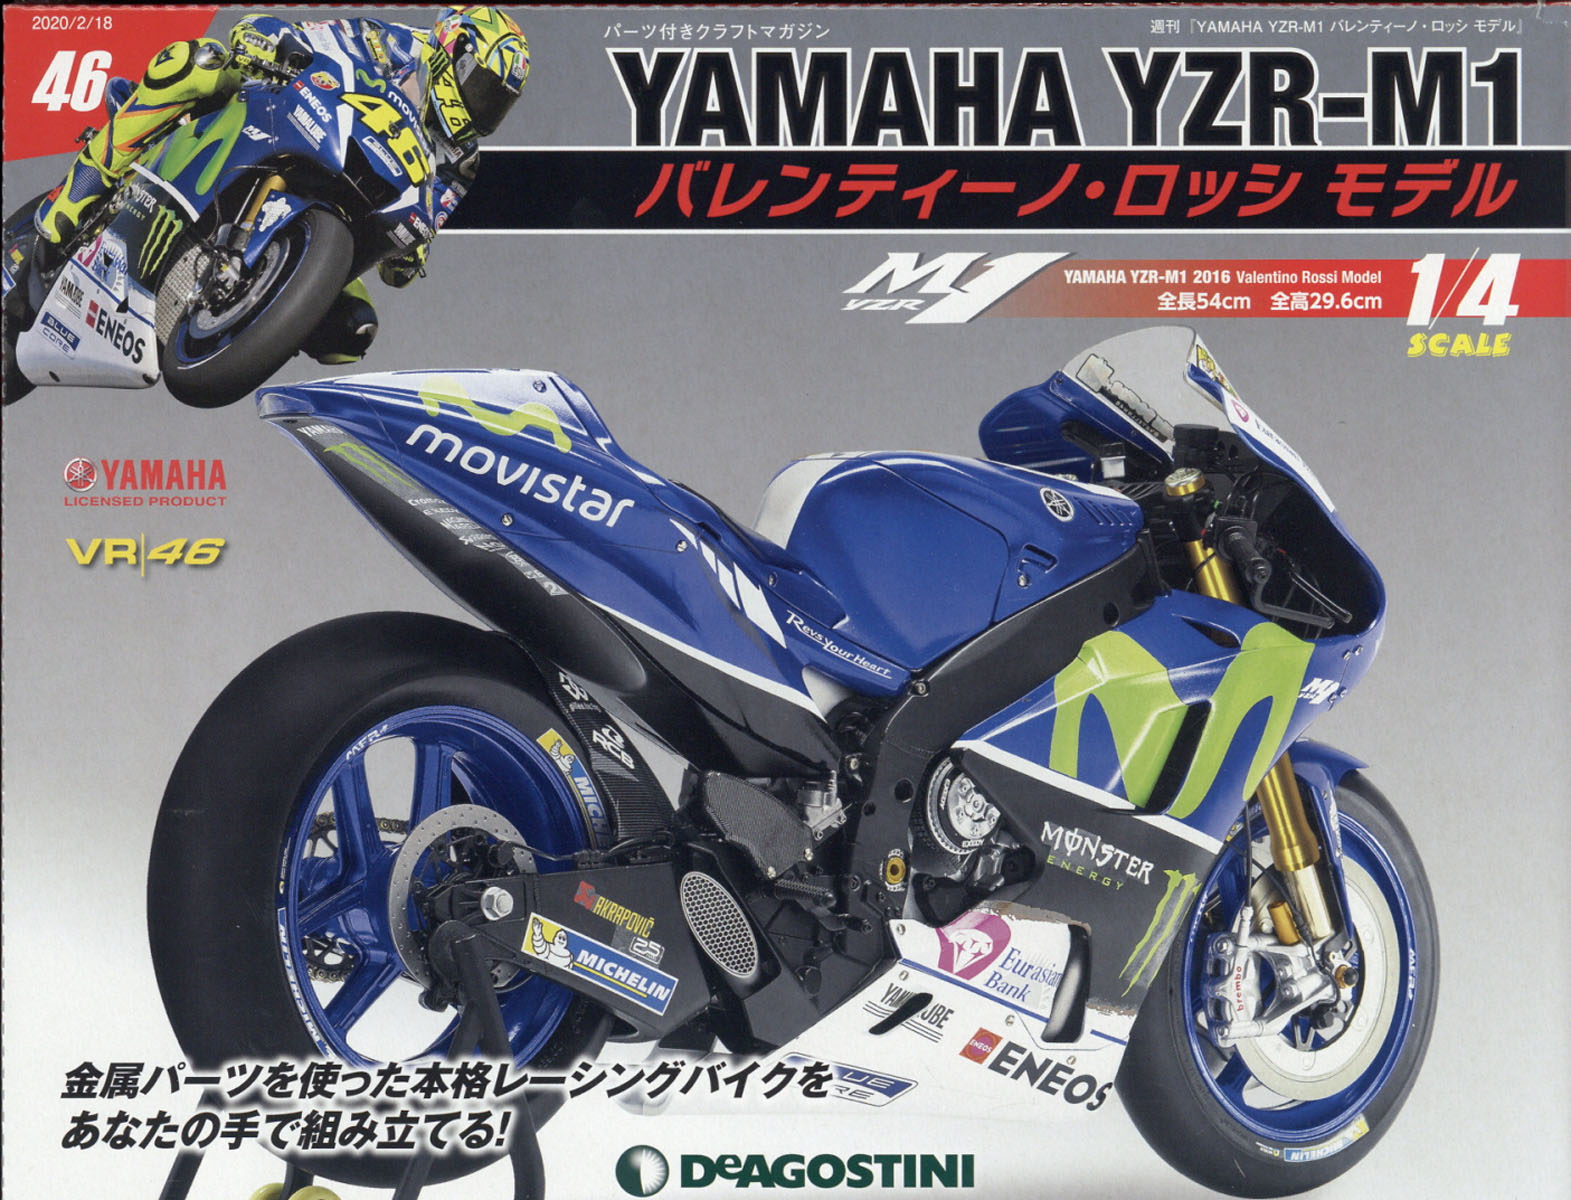 週刊 YAMAHA YZR-1 バレンティーノ・ロッシ モデル 2020年 2/18号 [雑誌]